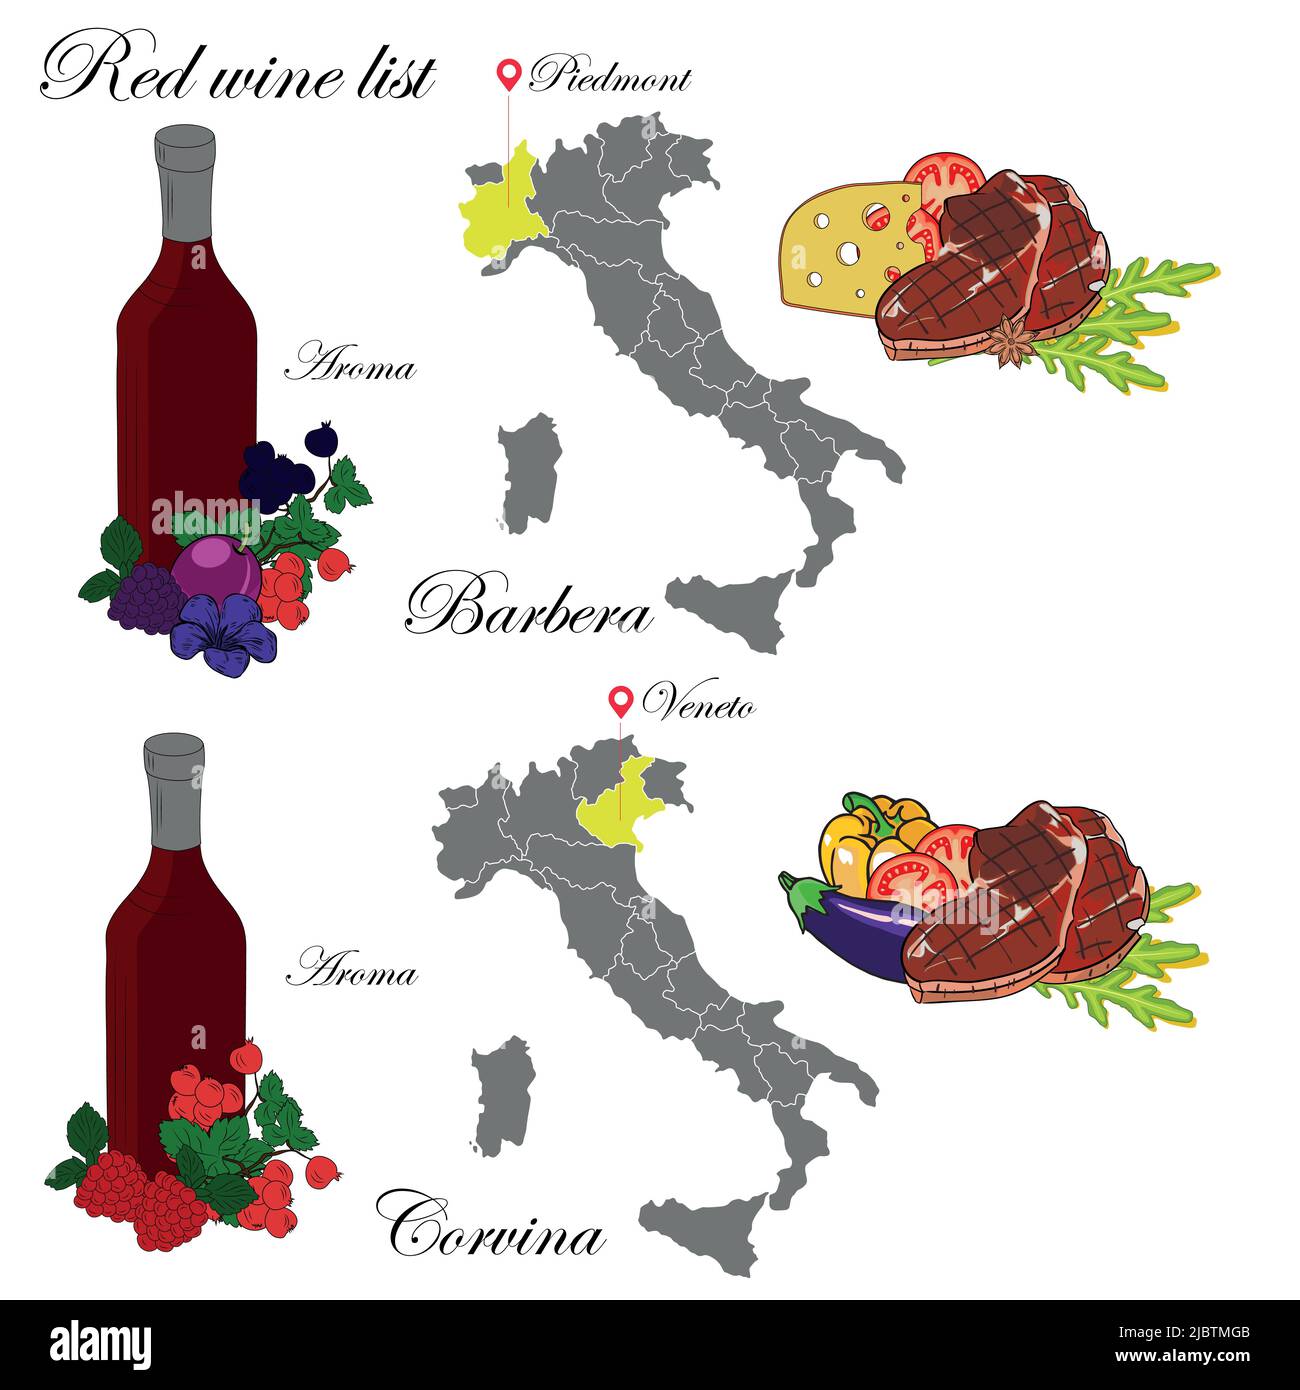 Barbera e Veneto. La carta dei vini. Un'illustrazione di un vino rosso con un esempio di aromi, una mappa dei vigneti e cibo che si abbina al vino. Illustrazione Vettoriale